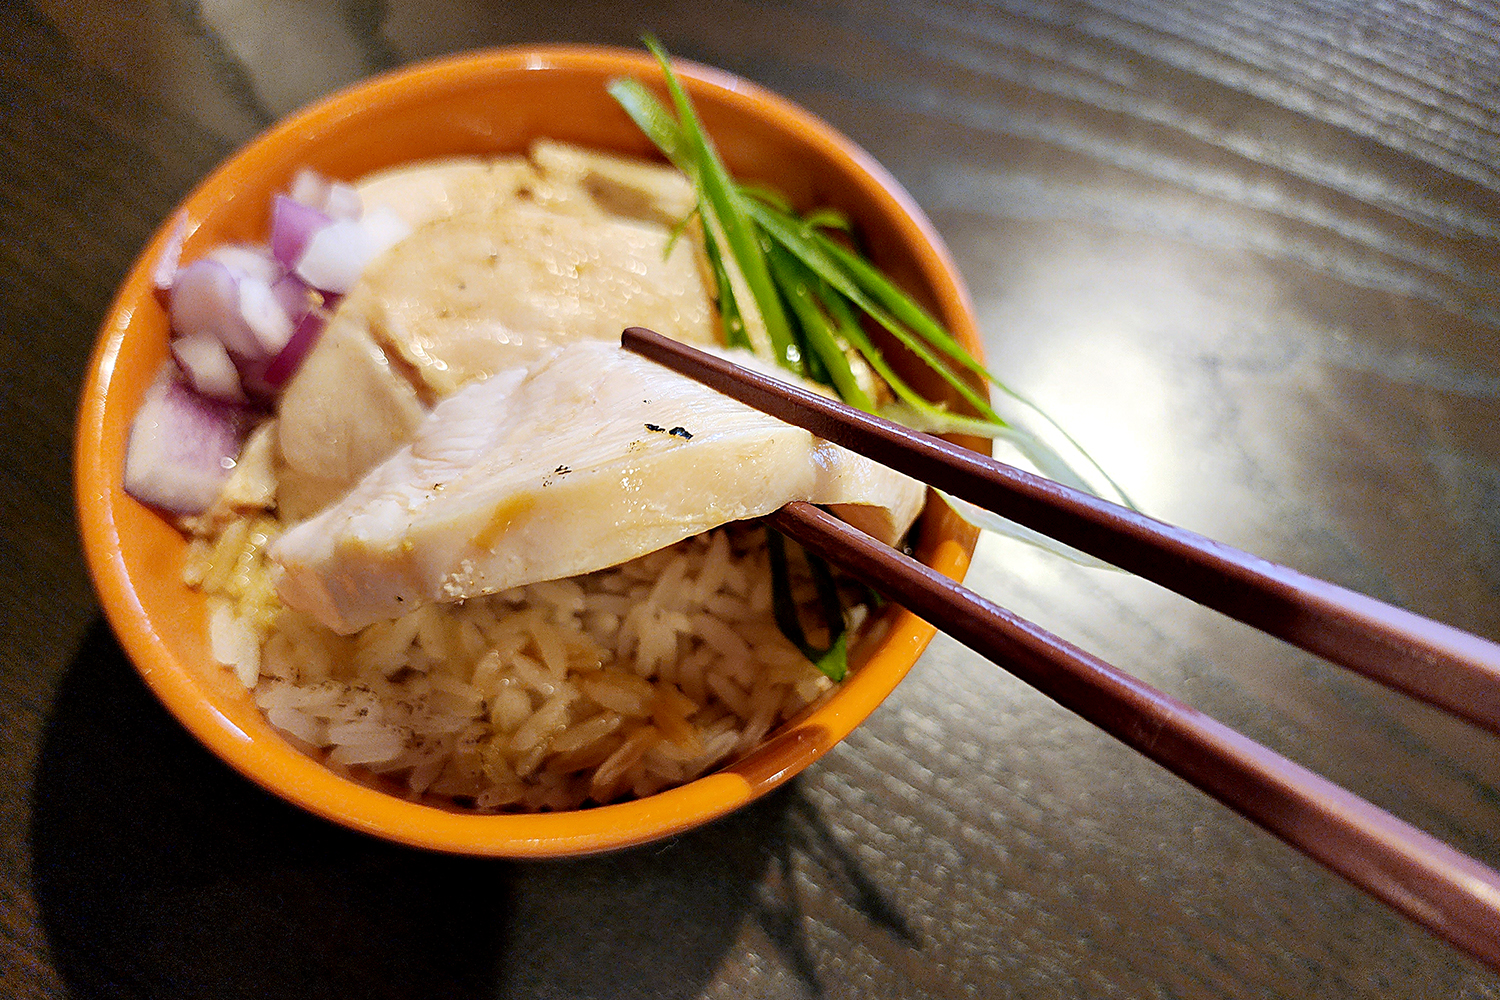 鶏胸肉のチャーシューは、タイ米に合わせても絶品。マリネと低温調理による風味と食感を味わおう。